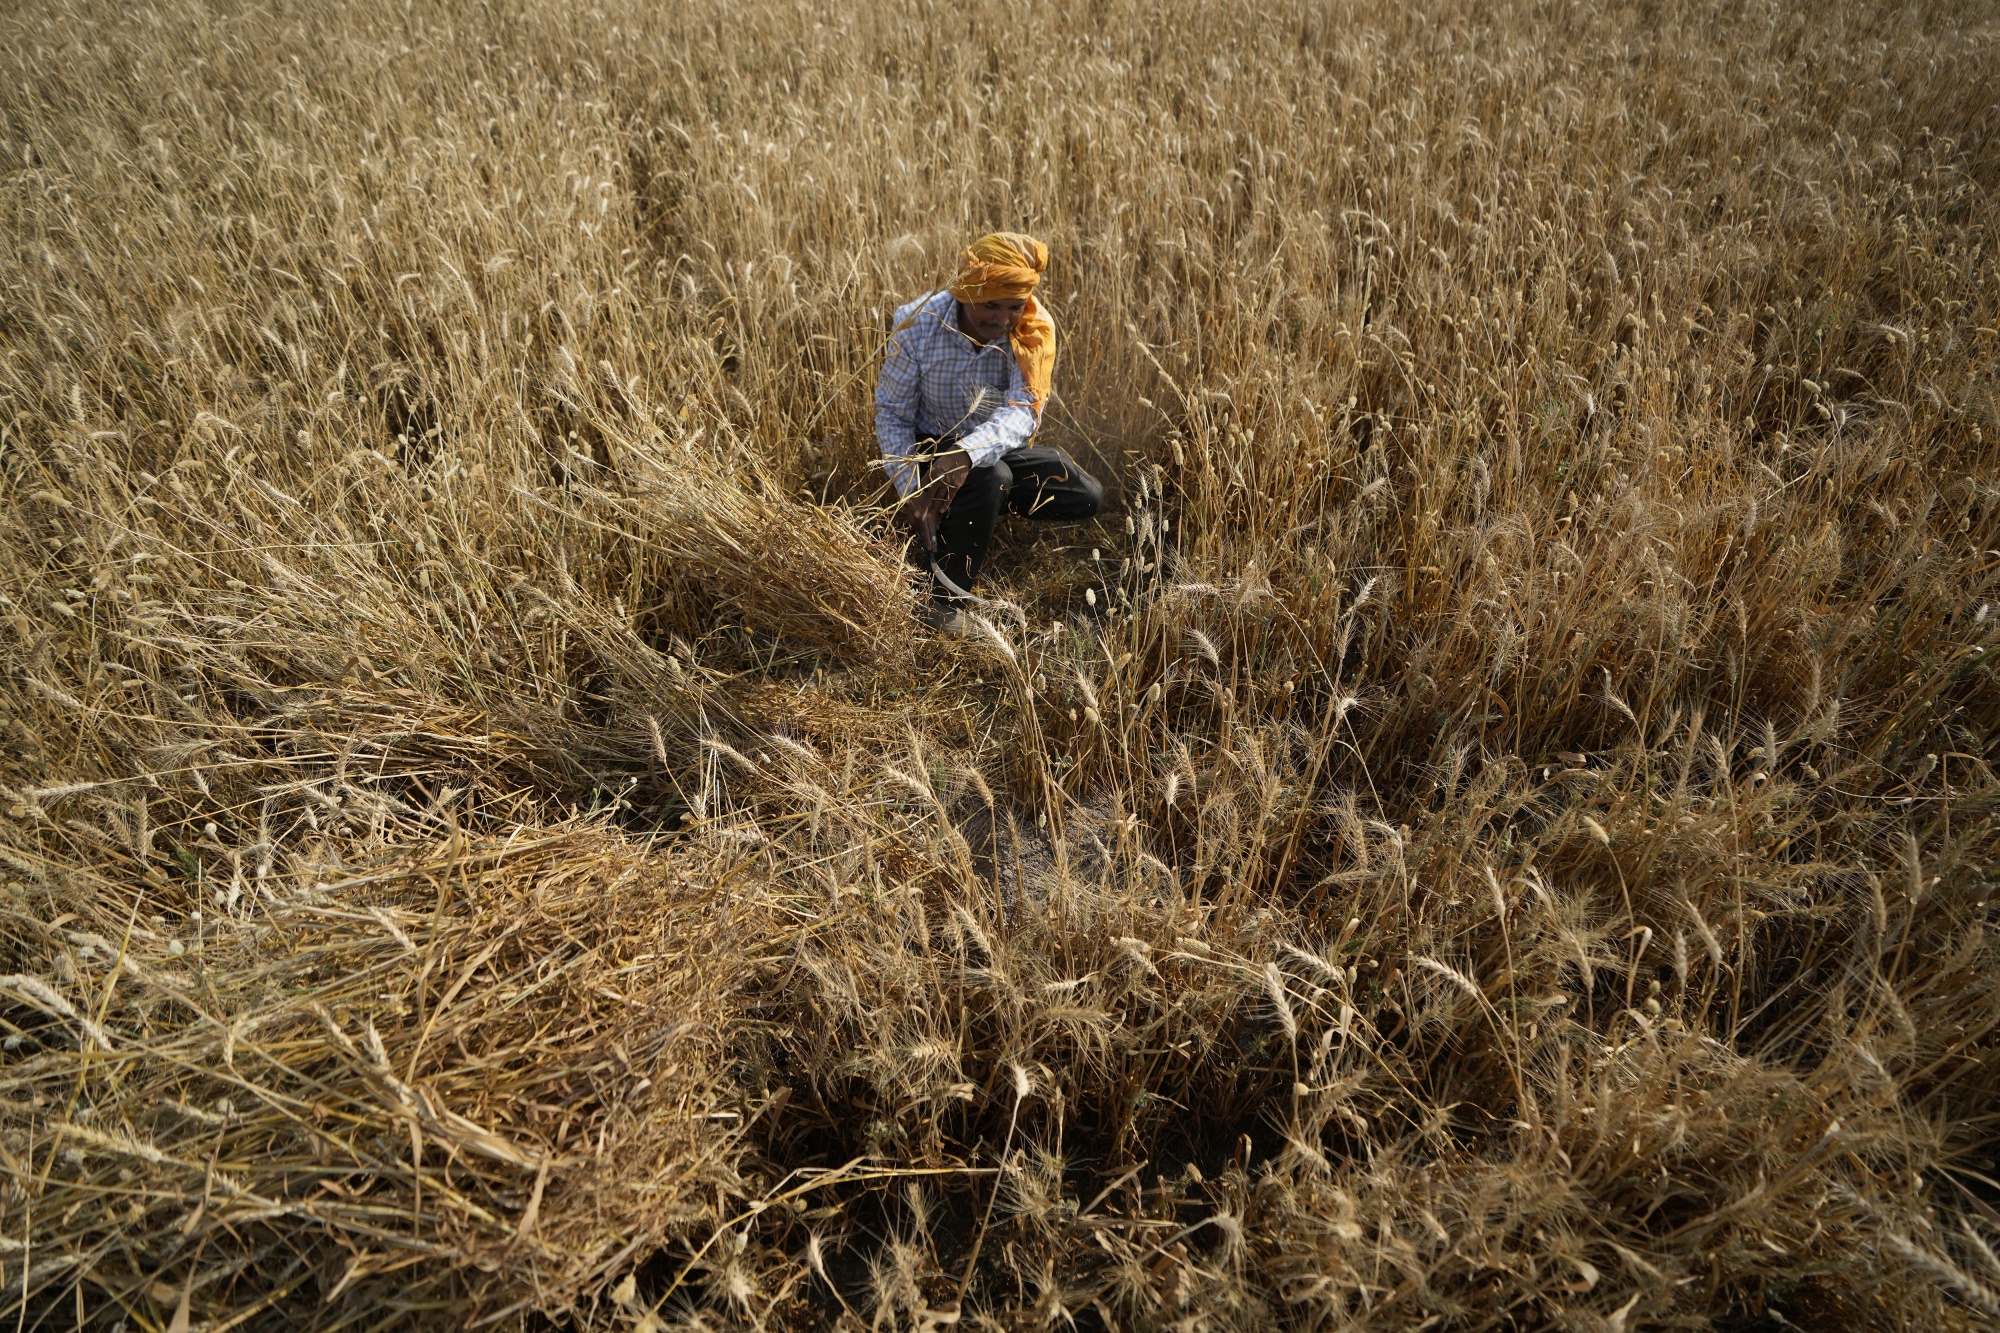 Індія на тлі зростання цін запровадила заборону на експорт пшениці